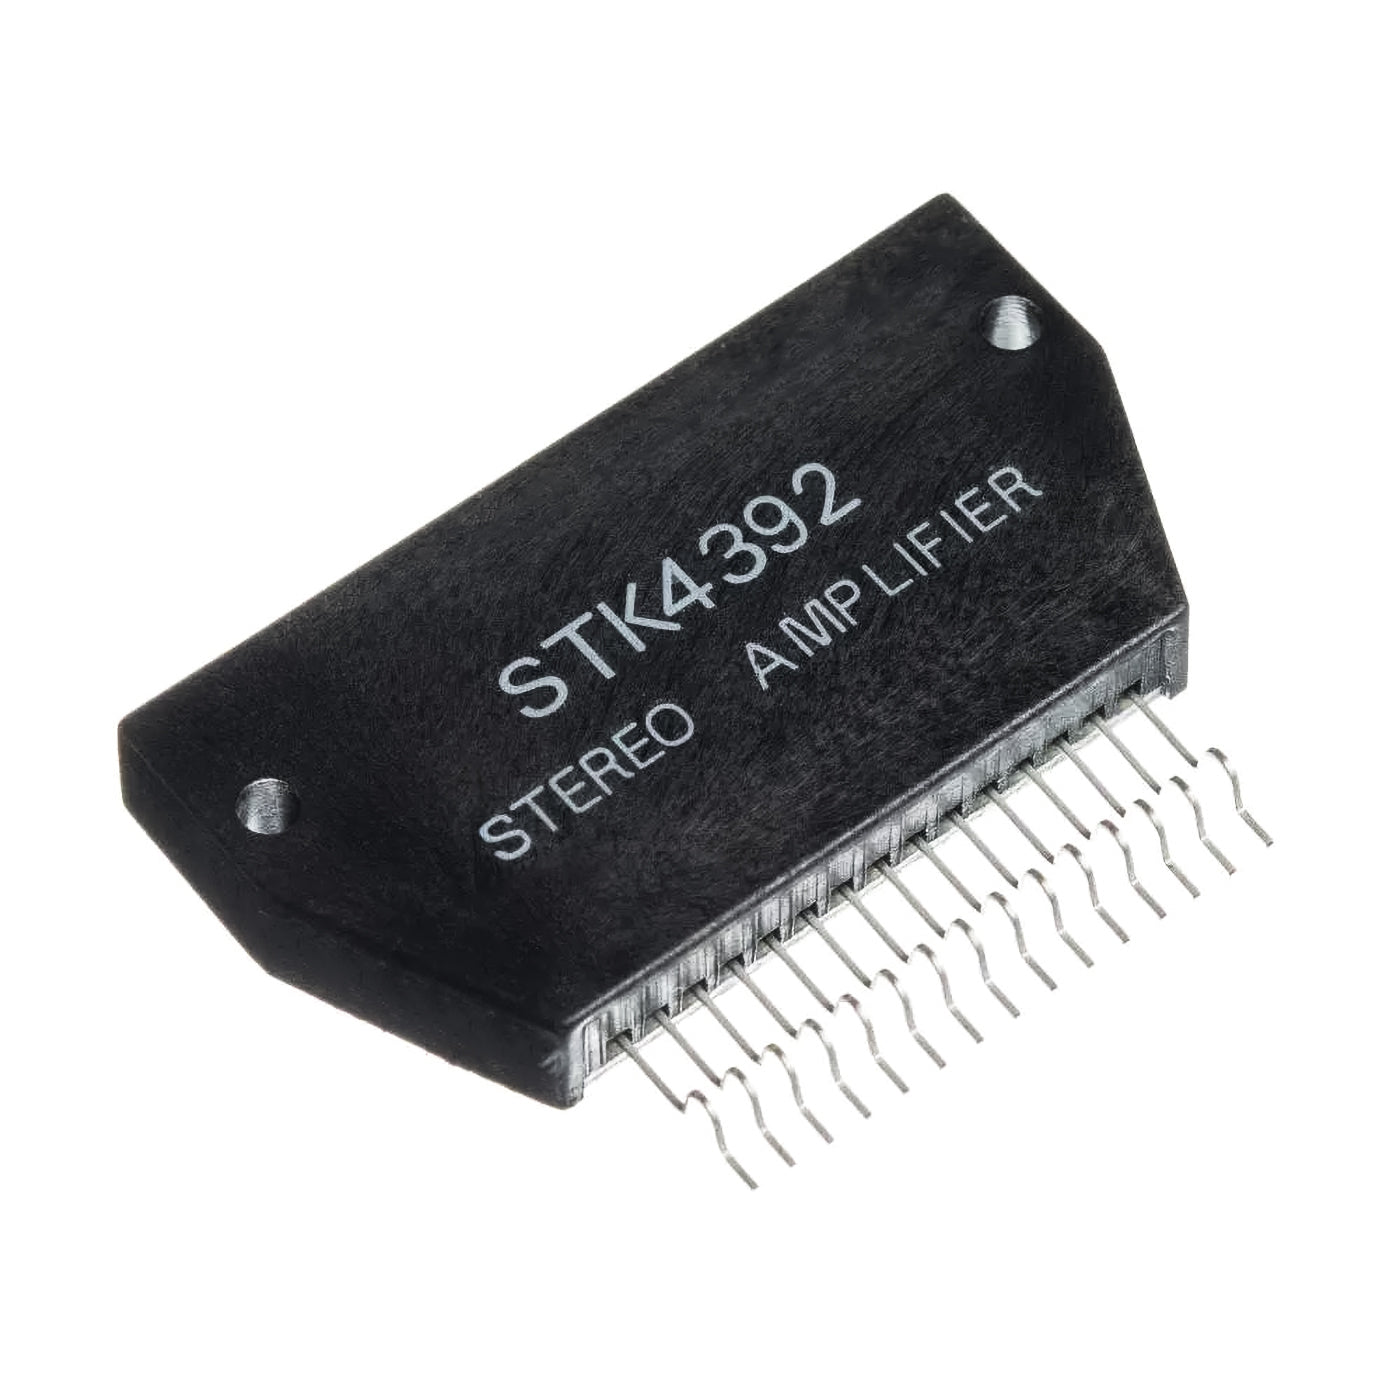 STK4392 componente elettronico, circuito integrato, transistor, stereo amplifier, 15 contatti